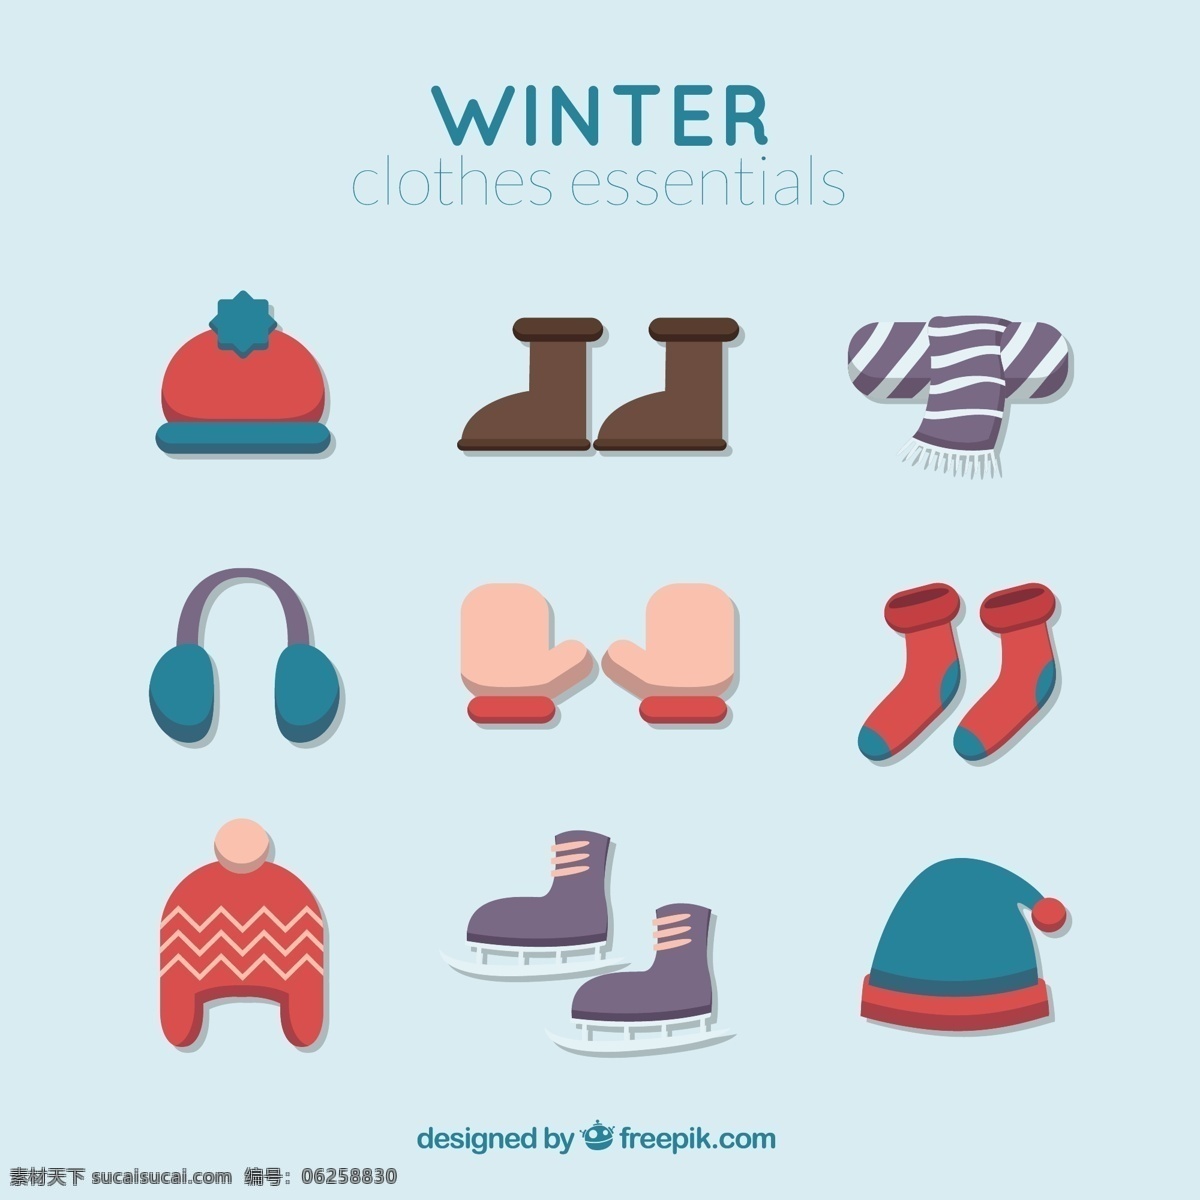 可爱 冬季 配饰 系列 冬天 时尚 衣服 帽子 十二月 冷 围巾 袜子 配件 季节 手套 套装 冰鞋 装备 季节性